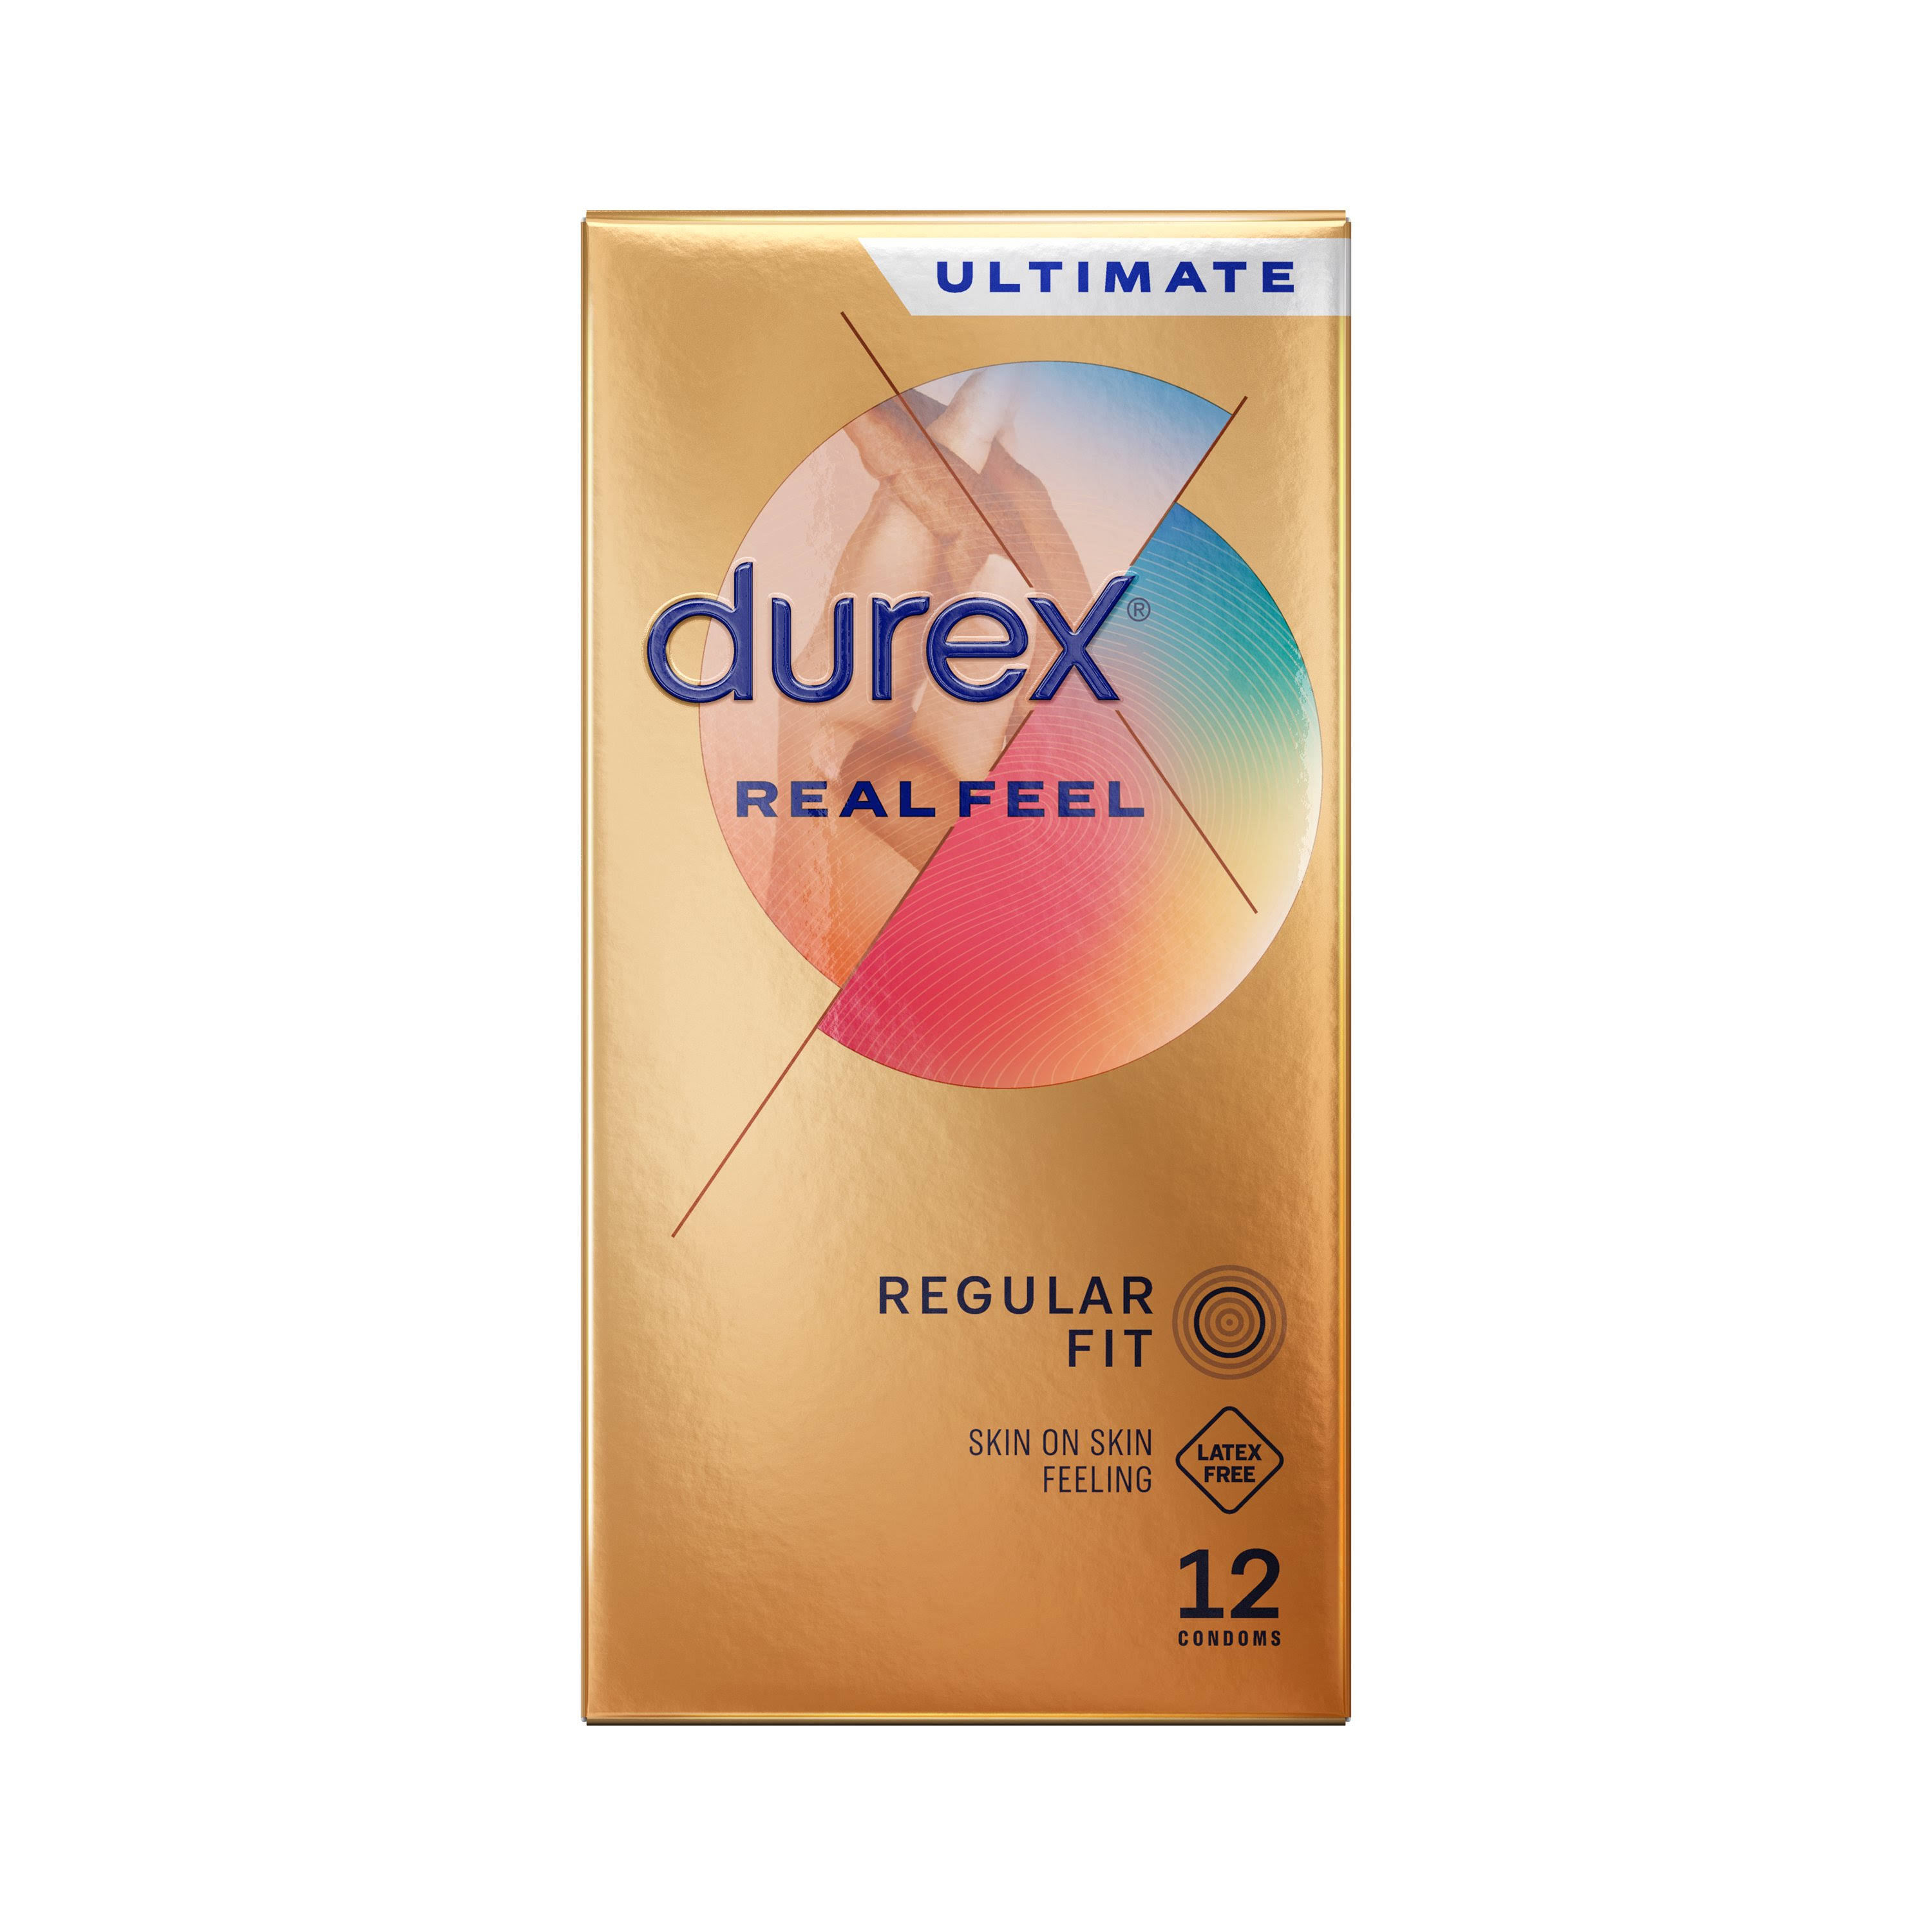 Durex Real Feel Condoms, Pack of 12